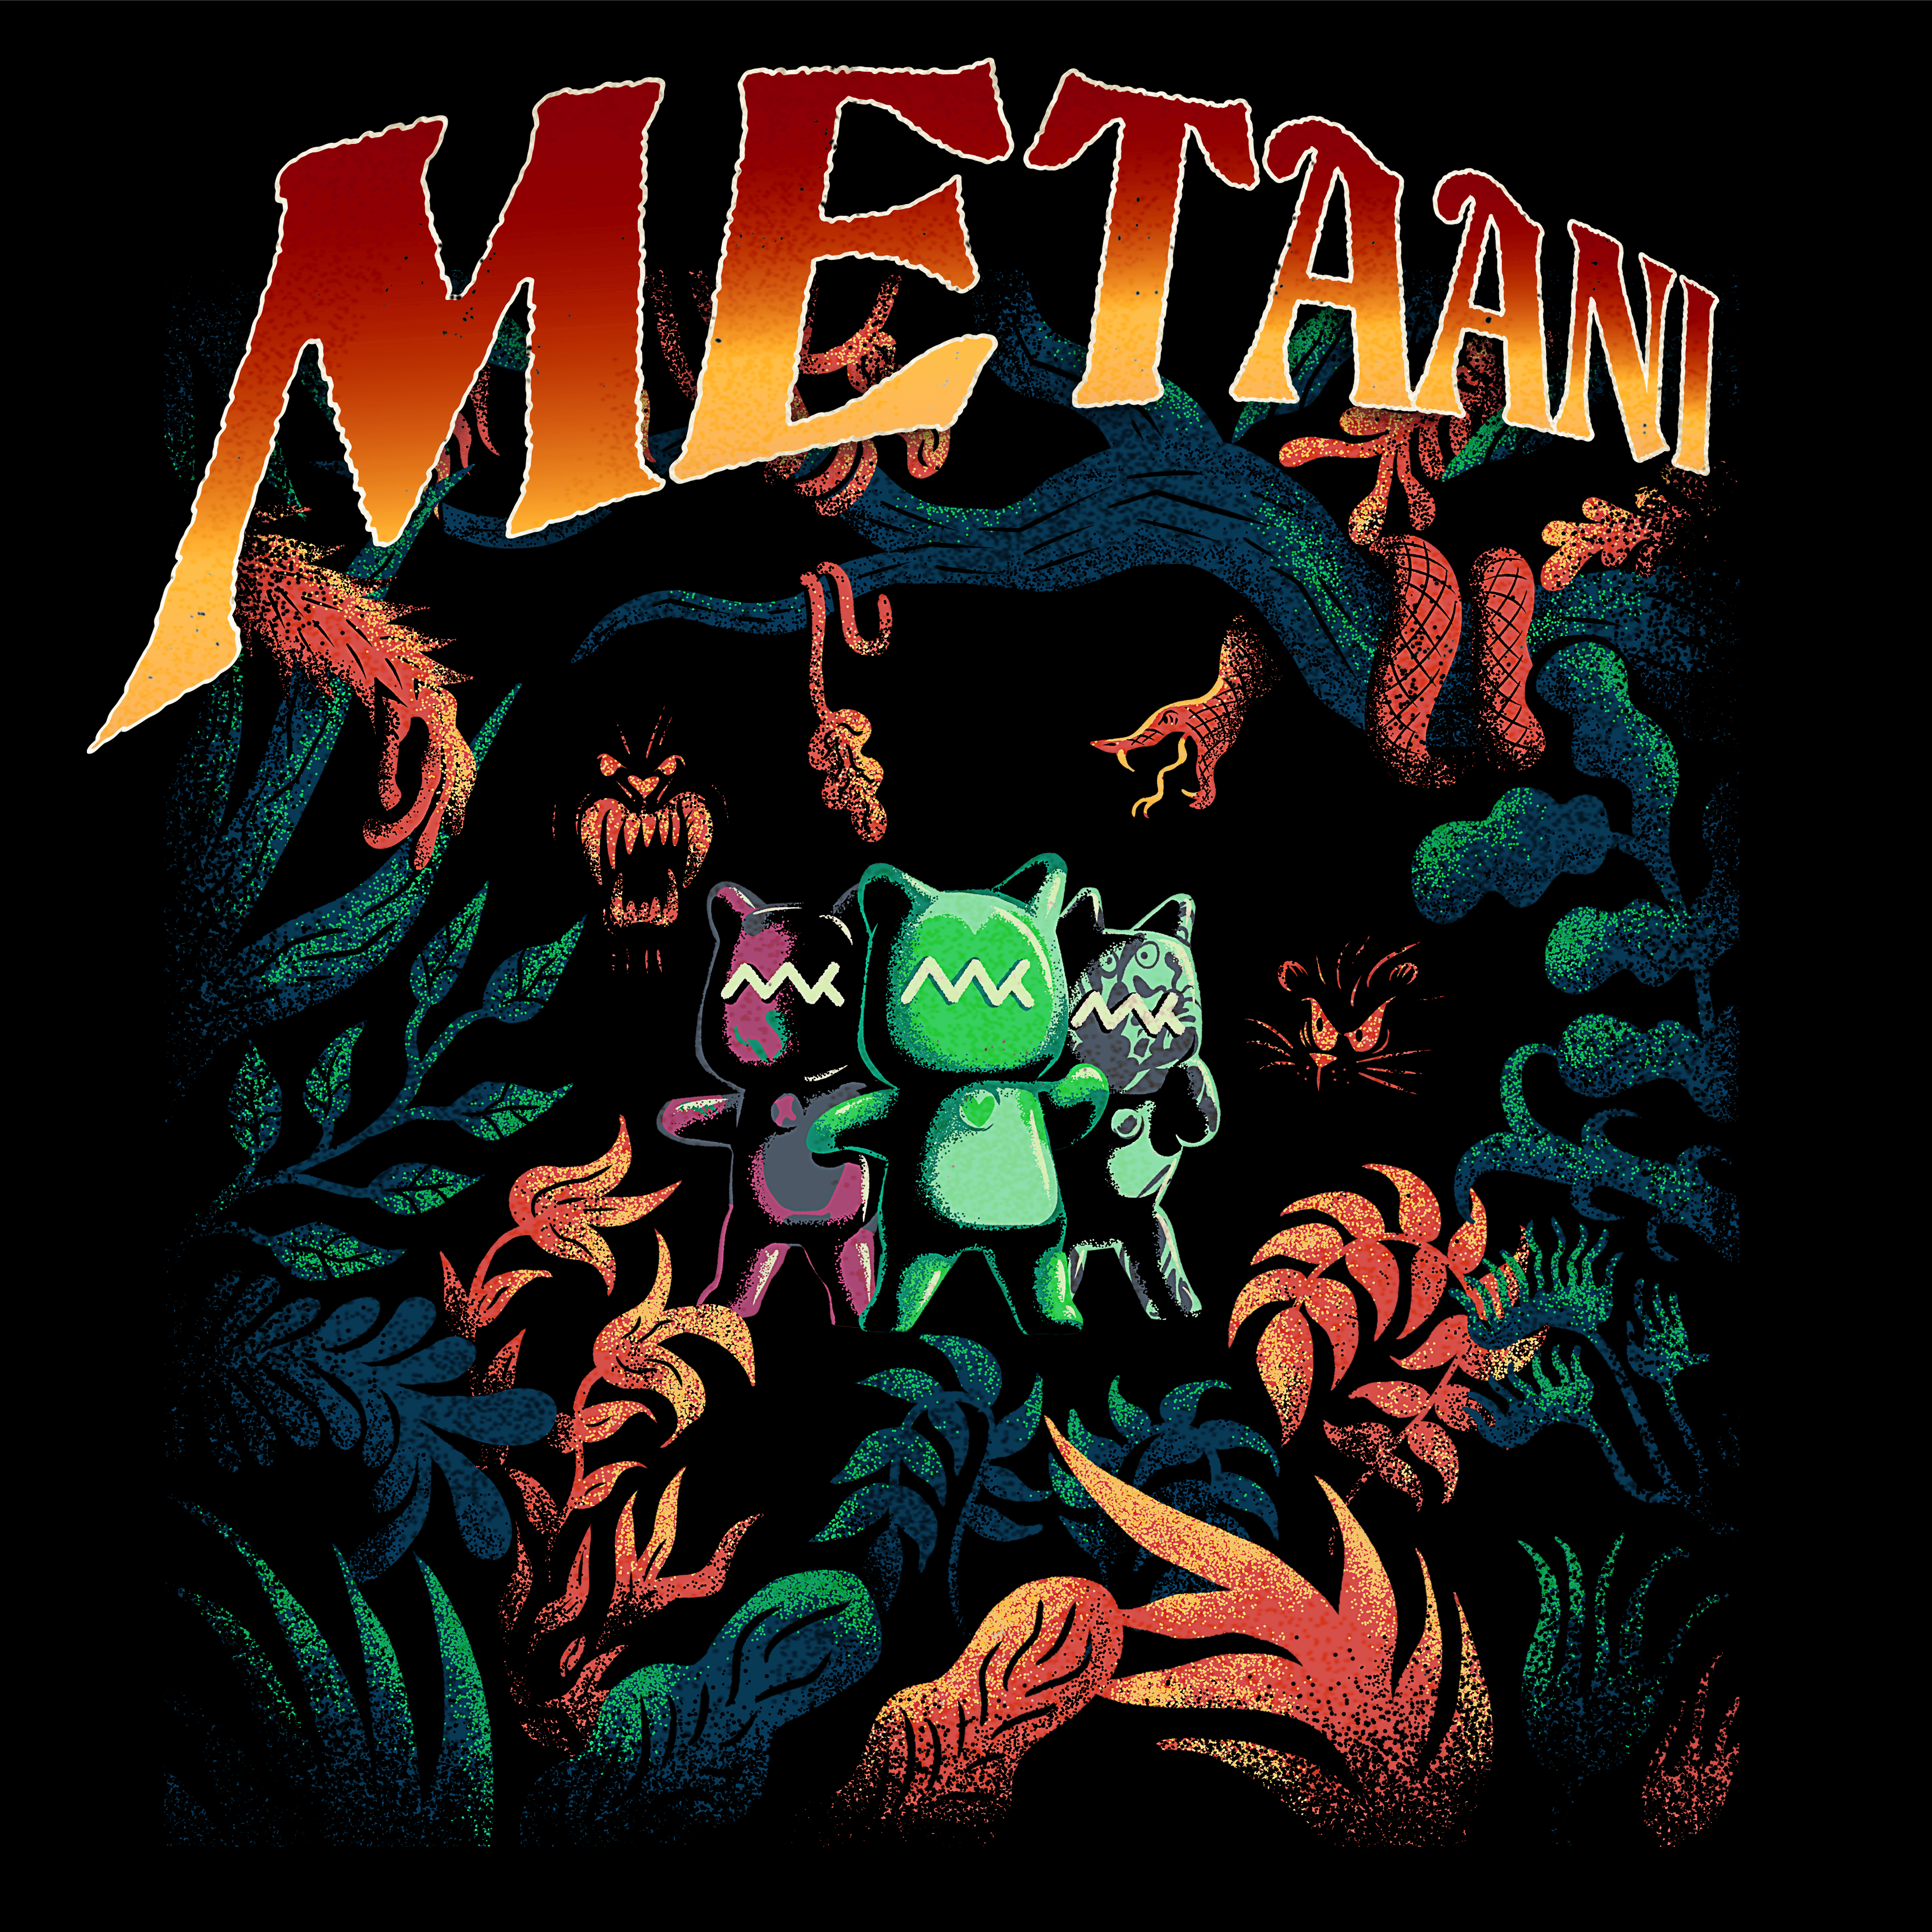 The Adventures of metaani